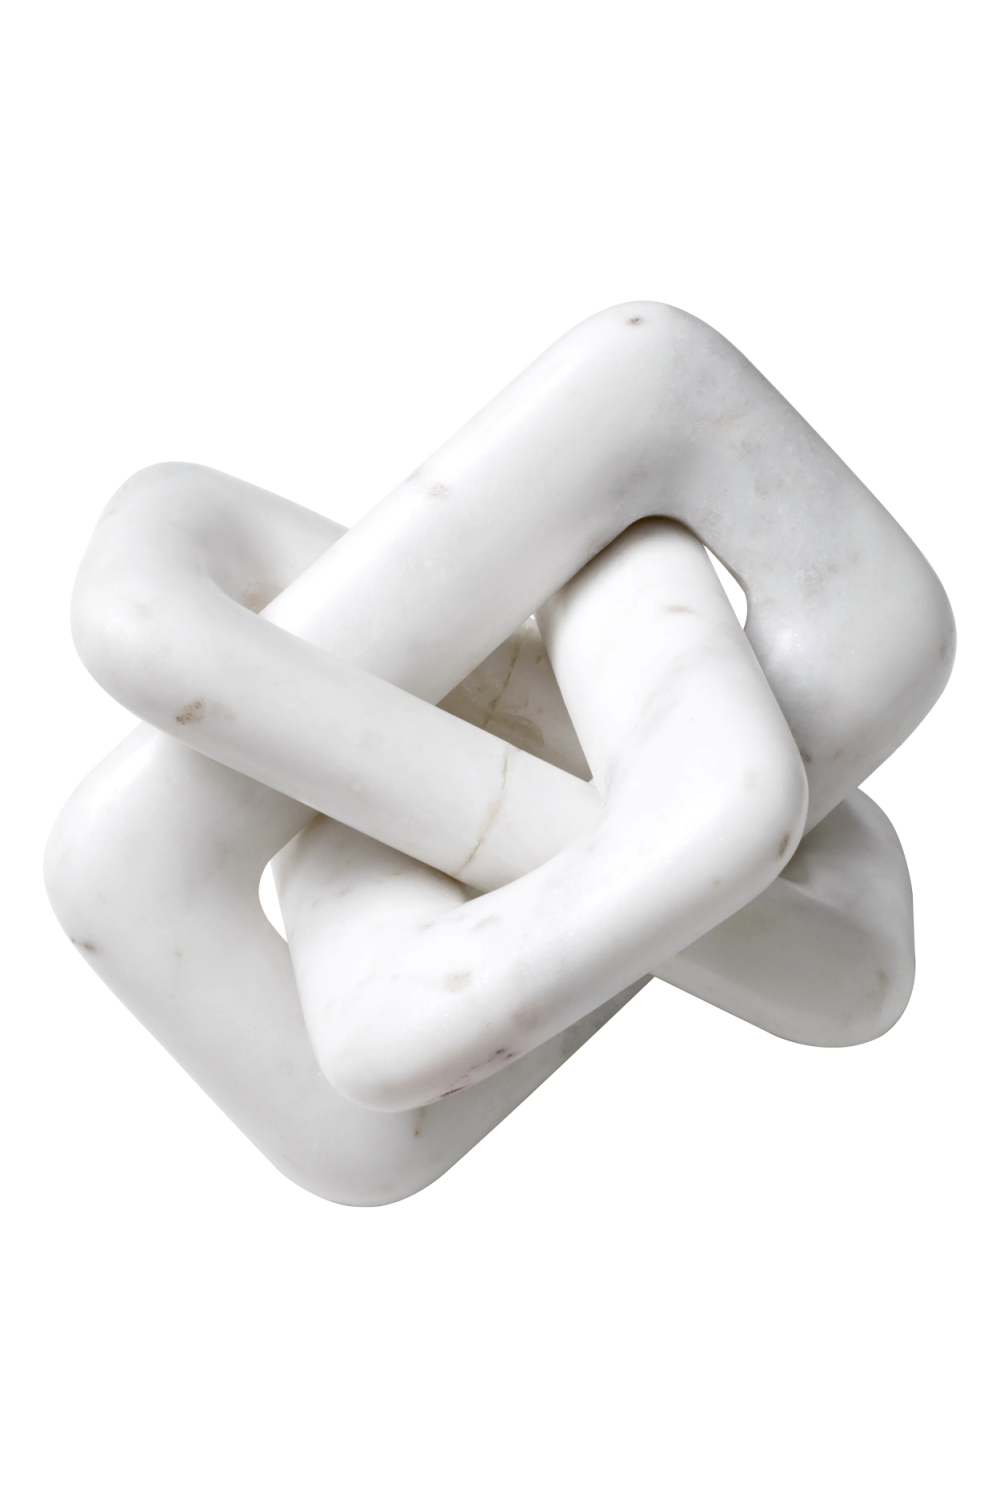 White Marble Unique Decorative Object | Eichholtz Eras | Oroa.com